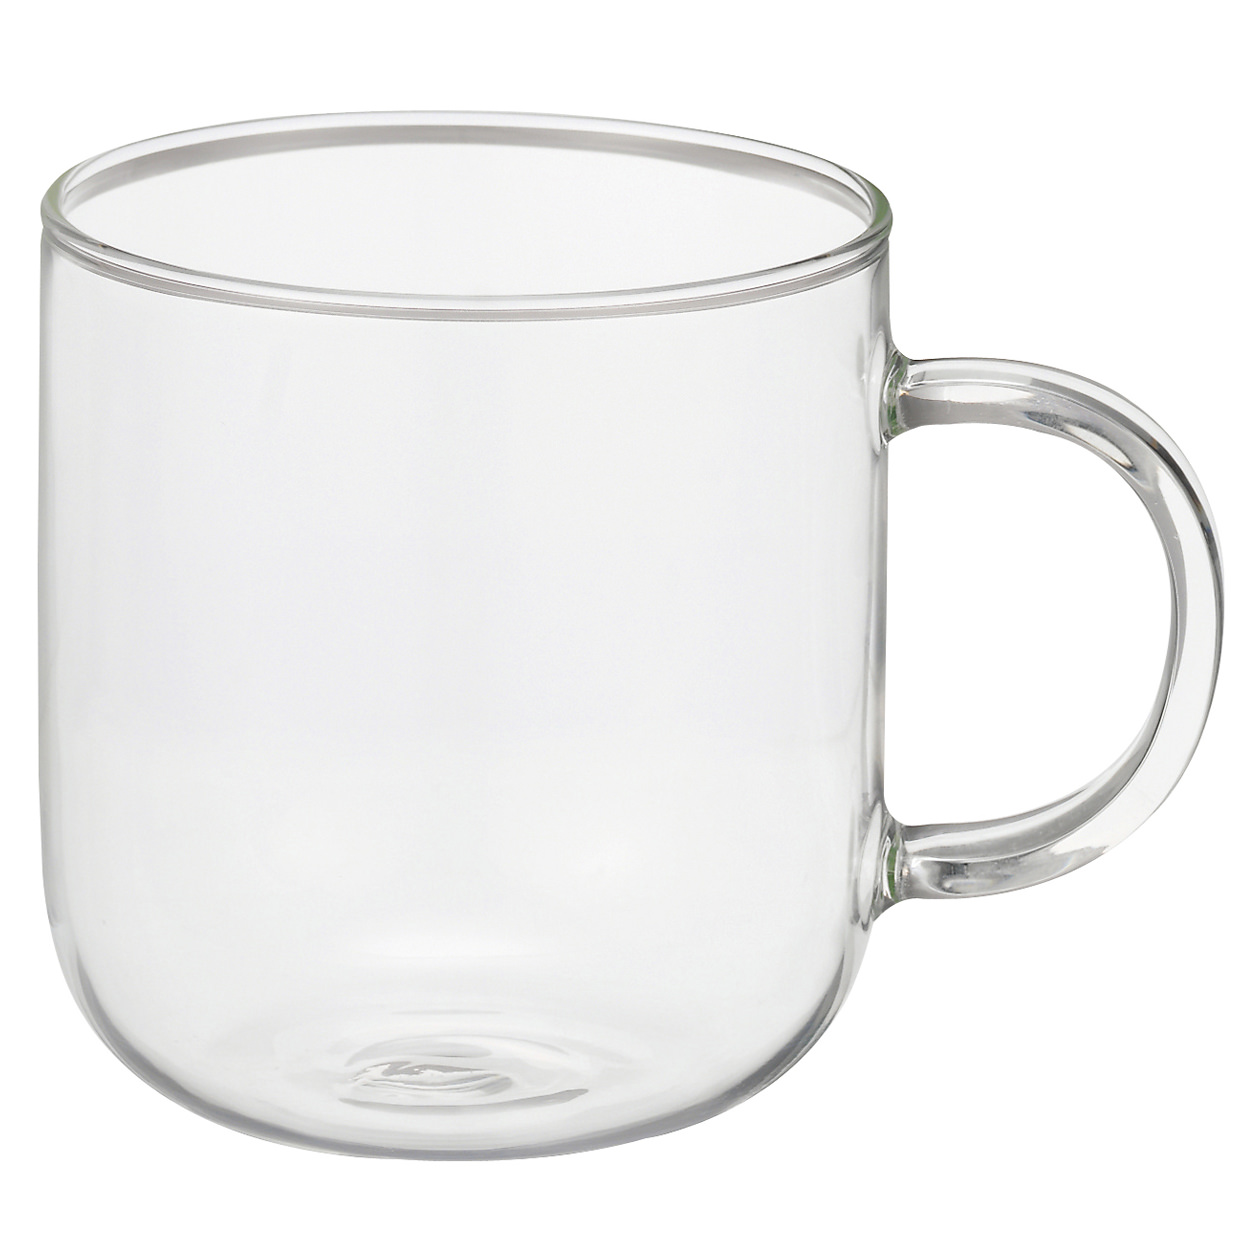 Heatproof Glass Mug